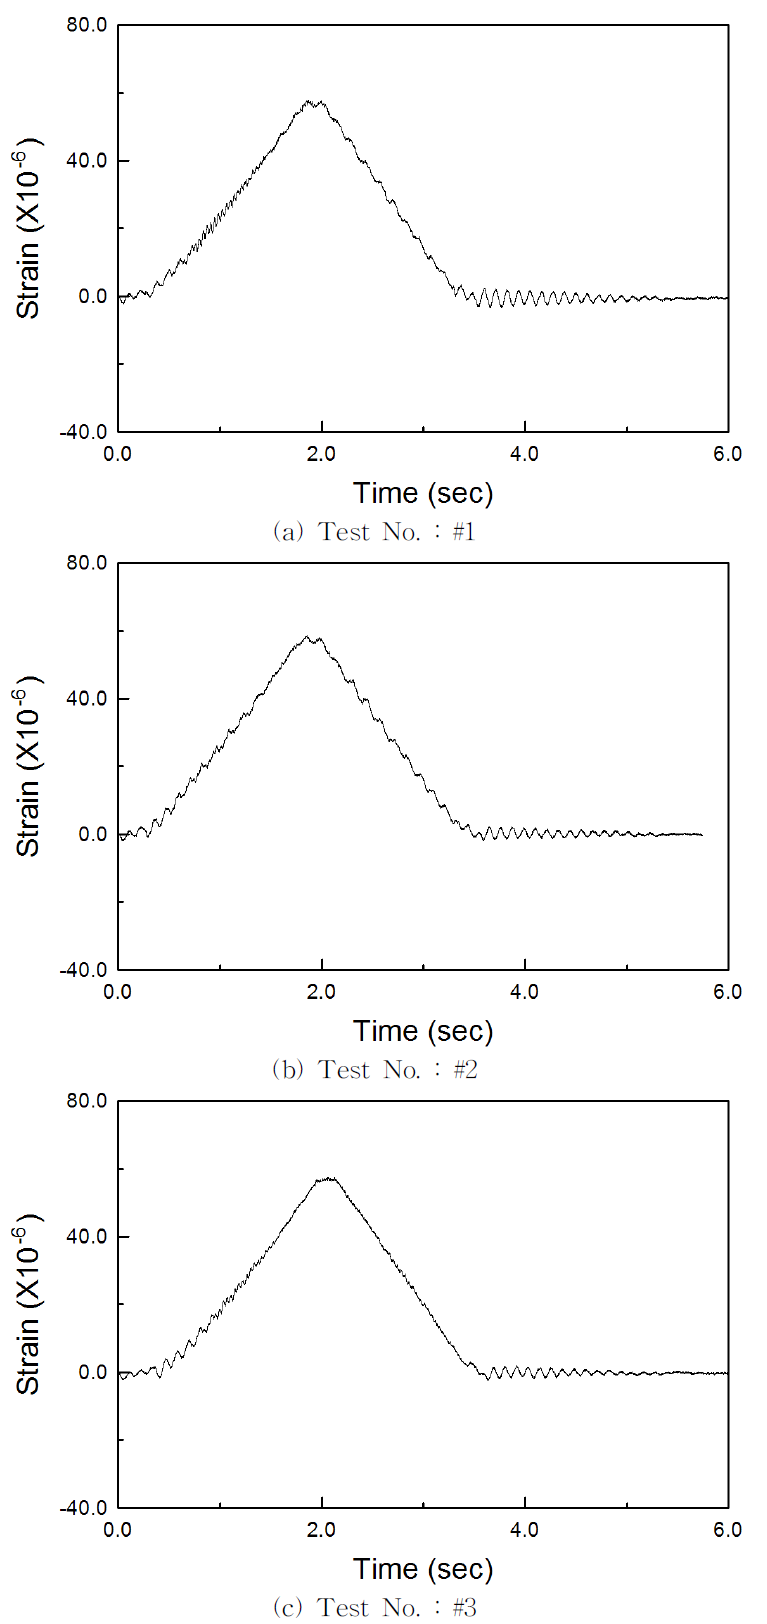 모형실험체 S-14.7-0 중앙점의 실측 변형률 시간이력곡선